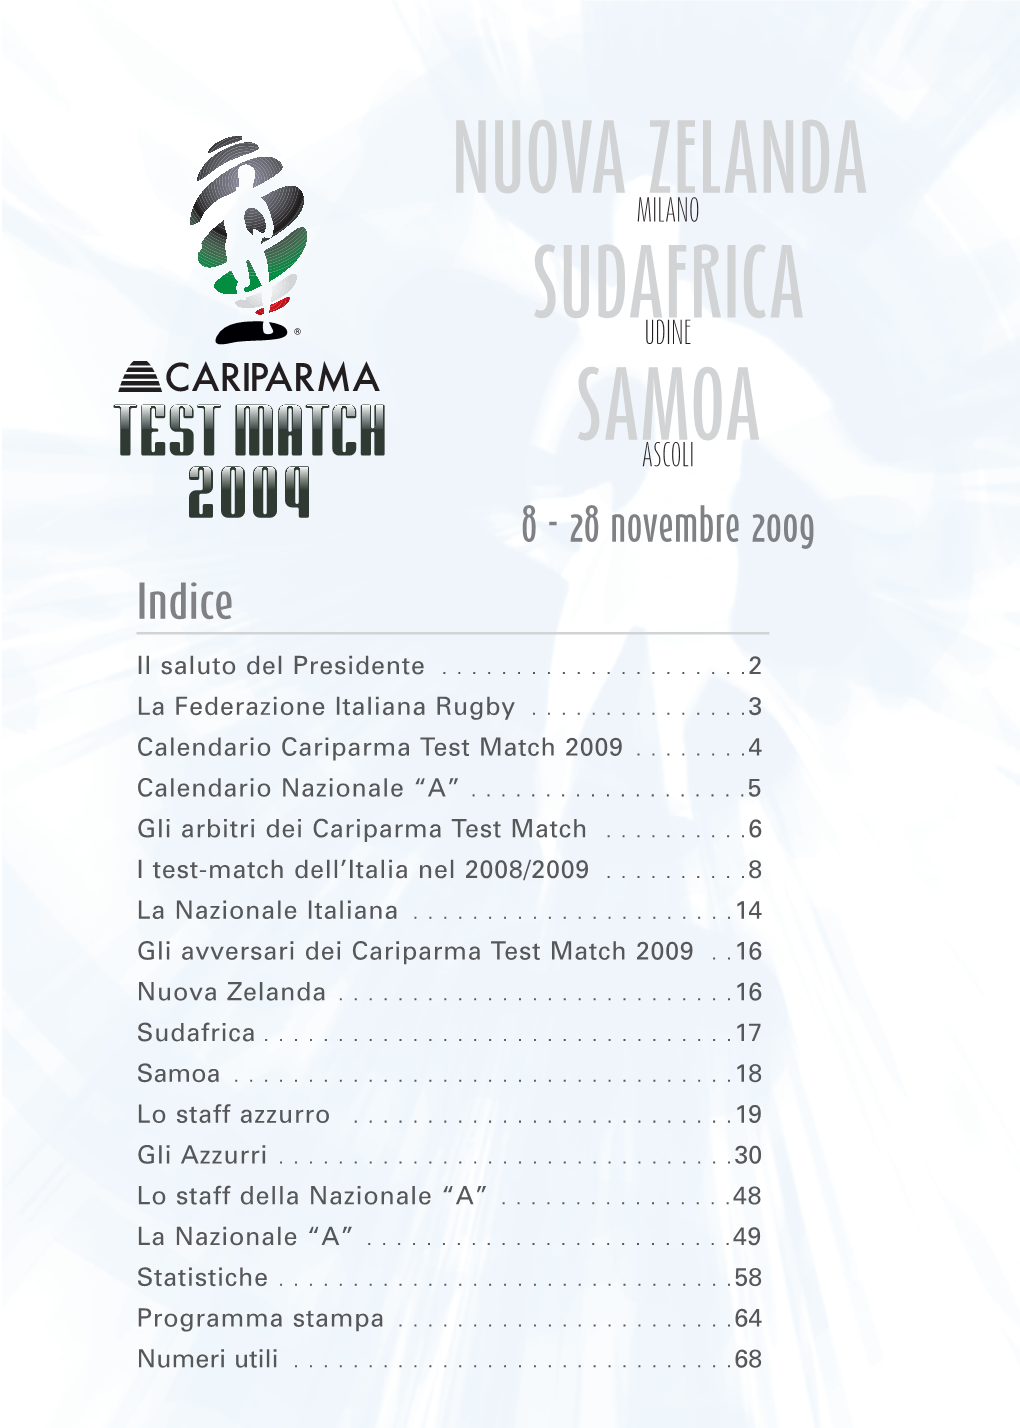 MEDIA GUIDE Cariparma Test Match 2009 FEDERAZIONE ITALIANA RUGBY